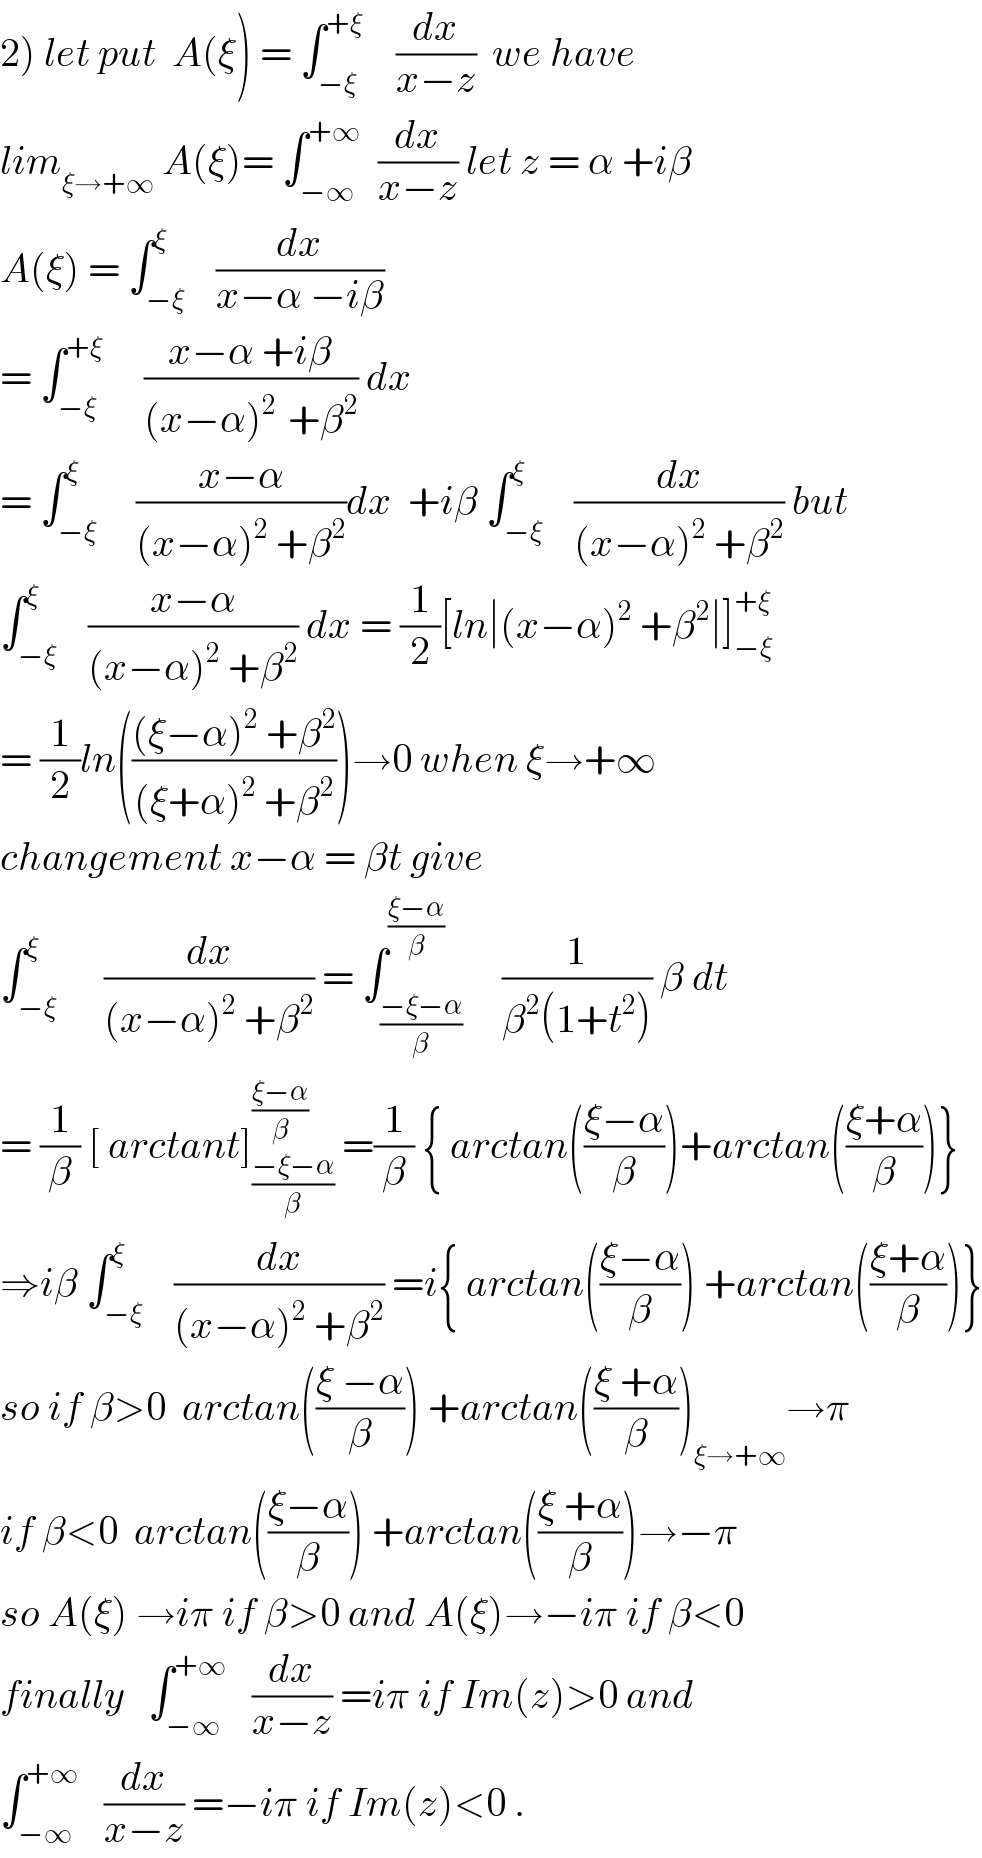 2) let put  A(ξ) = ∫_(−ξ) ^(+ξ)     (dx/(x−z))  we have   lim_(ξ→+∞)  A(ξ)= ∫_(−∞) ^(+∞)   (dx/(x−z)) let z = α +iβ  A(ξ) = ∫_(−ξ) ^ξ    (dx/(x−α −iβ))  = ∫_(−ξ) ^(+ξ)      ((x−α +iβ)/((x−α)^(2 )  +β^2 )) dx  = ∫_(−ξ) ^ξ     ((x−α)/((x−α)^2  +β^2 ))dx  +iβ ∫_(−ξ) ^ξ    (dx/((x−α)^2  +β^2 )) but  ∫_(−ξ) ^ξ    ((x−α)/((x−α)^2  +β^2 )) dx = (1/2)[ln∣(x−α)^2  +β^2 ∣]_(−ξ) ^(+ξ)   = (1/2)ln((((ξ−α)^2  +β^2 )/((ξ+α)^2  +β^2 )))→0 when ξ→+∞  changement x−α = βt give  ∫_(−ξ) ^ξ      (dx/((x−α)^2  +β^2 )) = ∫_((−ξ−α)/β) ^((ξ−α)/β)     (1/(β^2 (1+t^2 ))) β dt  = (1/β) [ arctant]_((−ξ−α)/β) ^((ξ−α)/β)  =(1/β) { arctan(((ξ−α)/β))+arctan(((ξ+α)/β))}  ⇒iβ ∫_(−ξ) ^ξ    (dx/((x−α)^2  +β^2 )) =i{ arctan(((ξ−α)/β)) +arctan(((ξ+α)/β))}  so if β>0  arctan(((ξ −α)/β)) +arctan(((ξ +α)/β))_(ξ→+∞) →π  if β<0  arctan(((ξ−α)/β)) +arctan(((ξ +α)/β))→−π  so A(ξ) →iπ if β>0 and A(ξ)→−iπ if β<0  finally   ∫_(−∞) ^(+∞)    (dx/(x−z)) =iπ if Im(z)>0 and  ∫_(−∞) ^(+∞)    (dx/(x−z)) =−iπ if Im(z)<0 .  